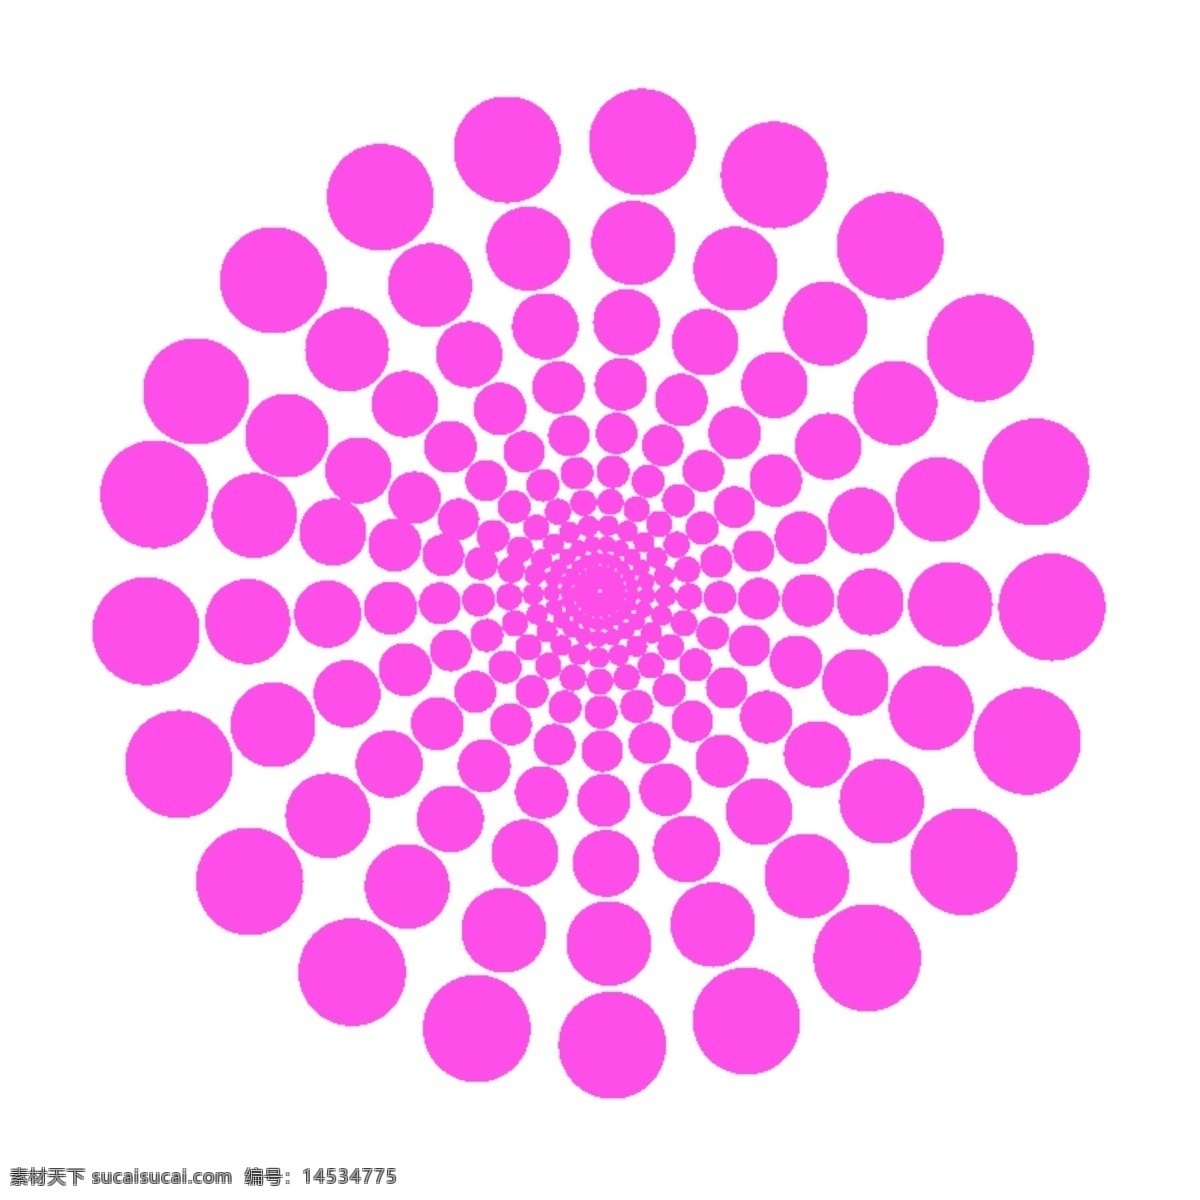 旋转 圆圈 海报 展示 圆圈海报 主图 平面设计 花式效果图